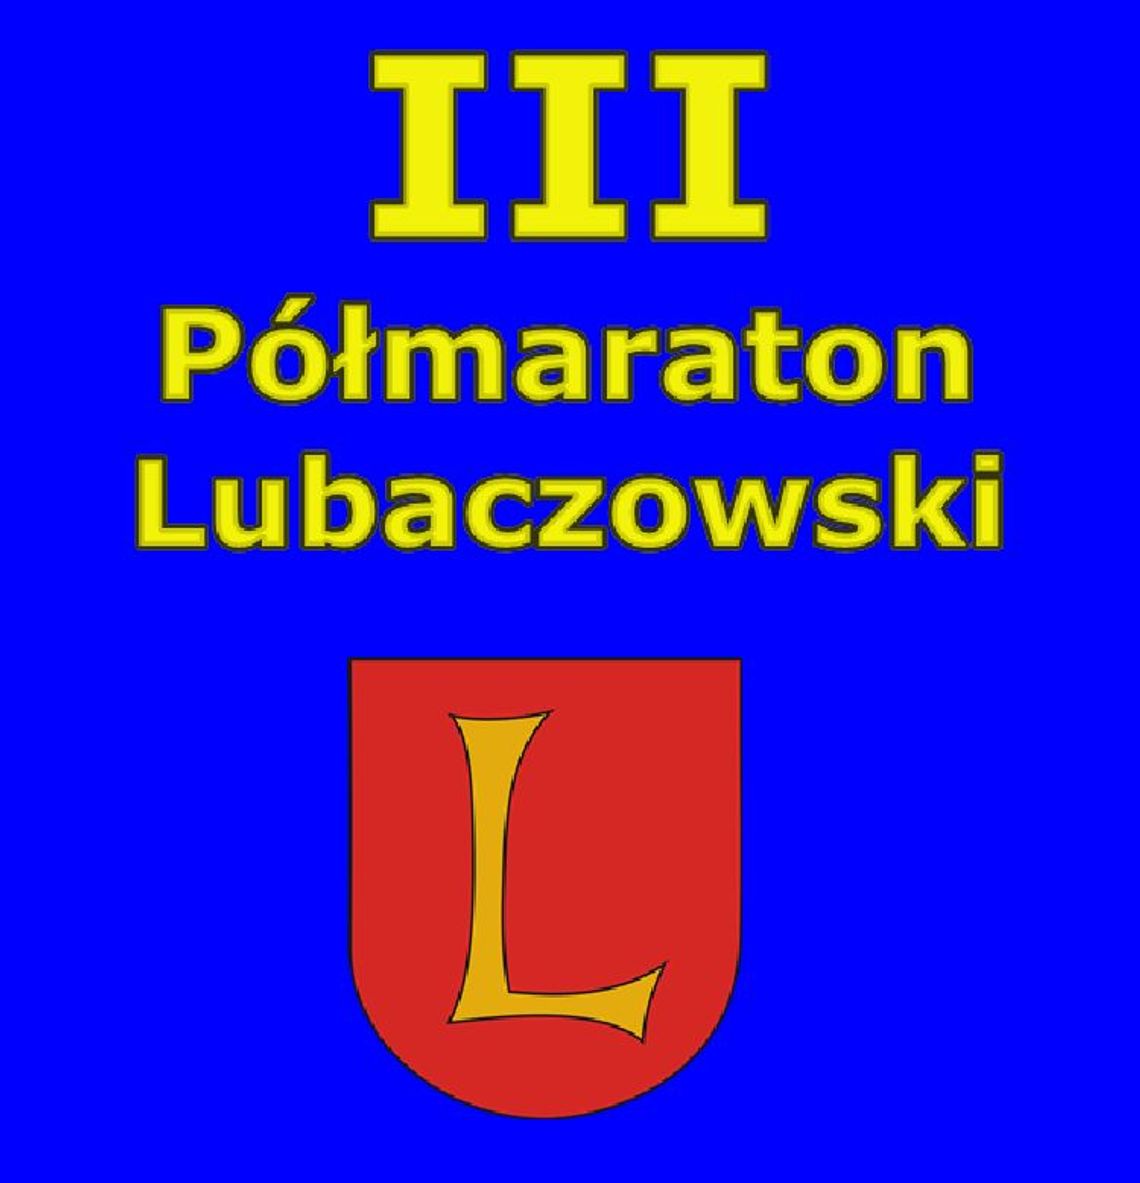 Trwają zapisy do III Półmaratonu Lubaczowskiego